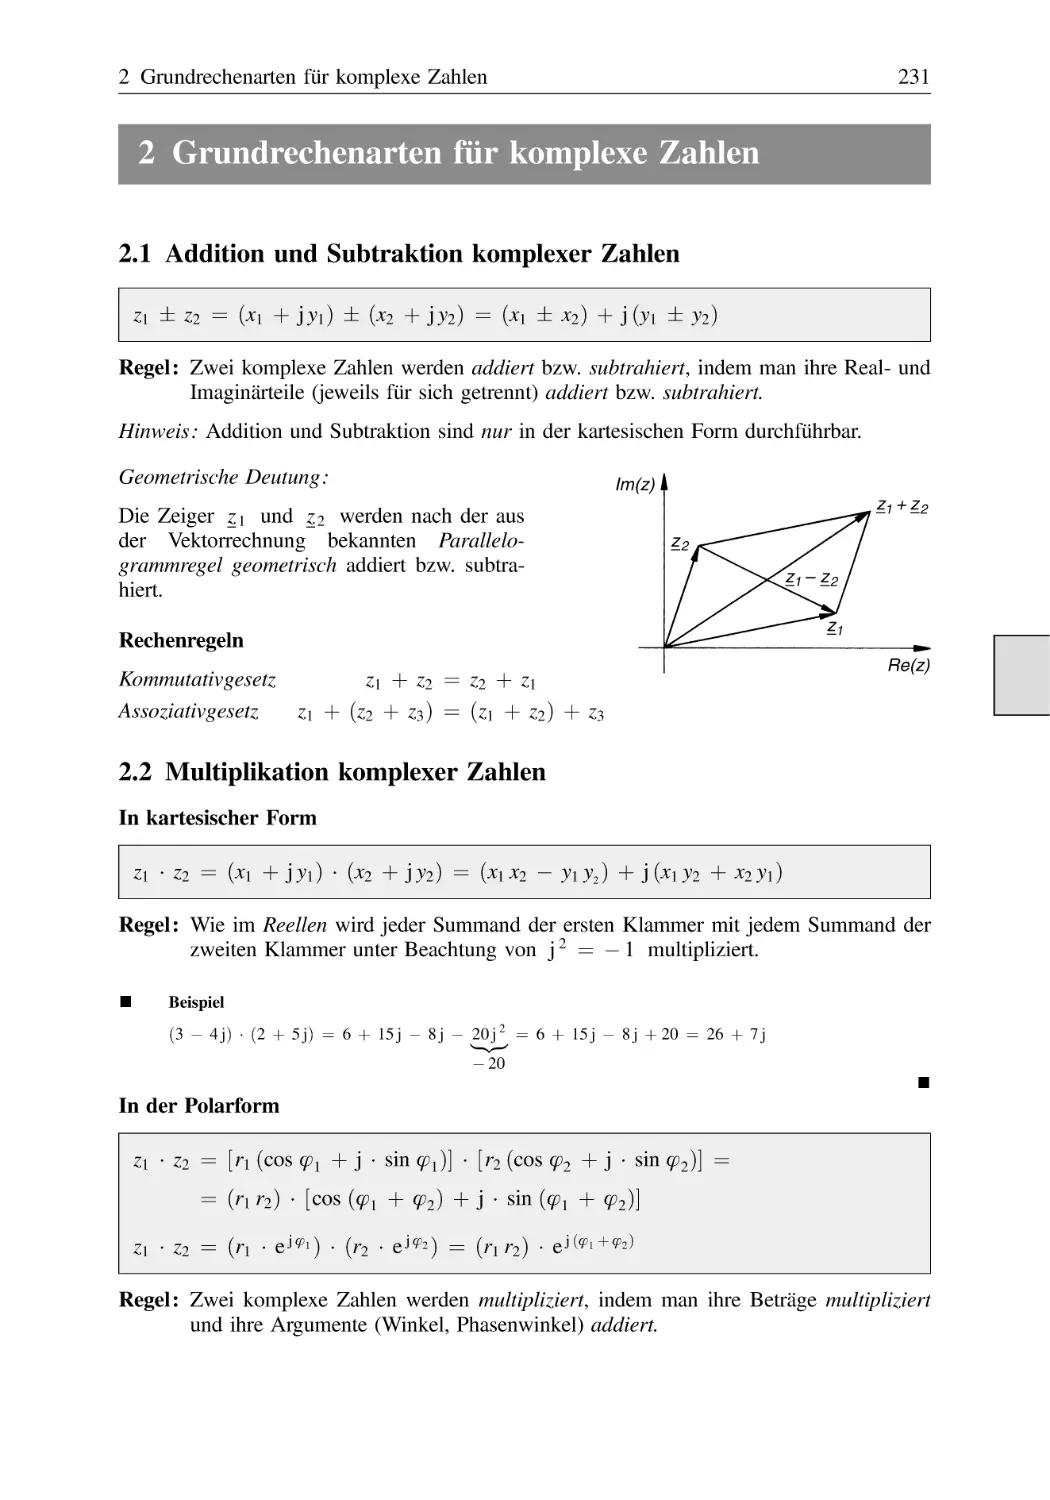 2 Grundrechenarten für komplexe Zahlen
2.1 Addition und Subtraktion komplexer Zahlen
2.2 Multiplikation komplexer Zahlen